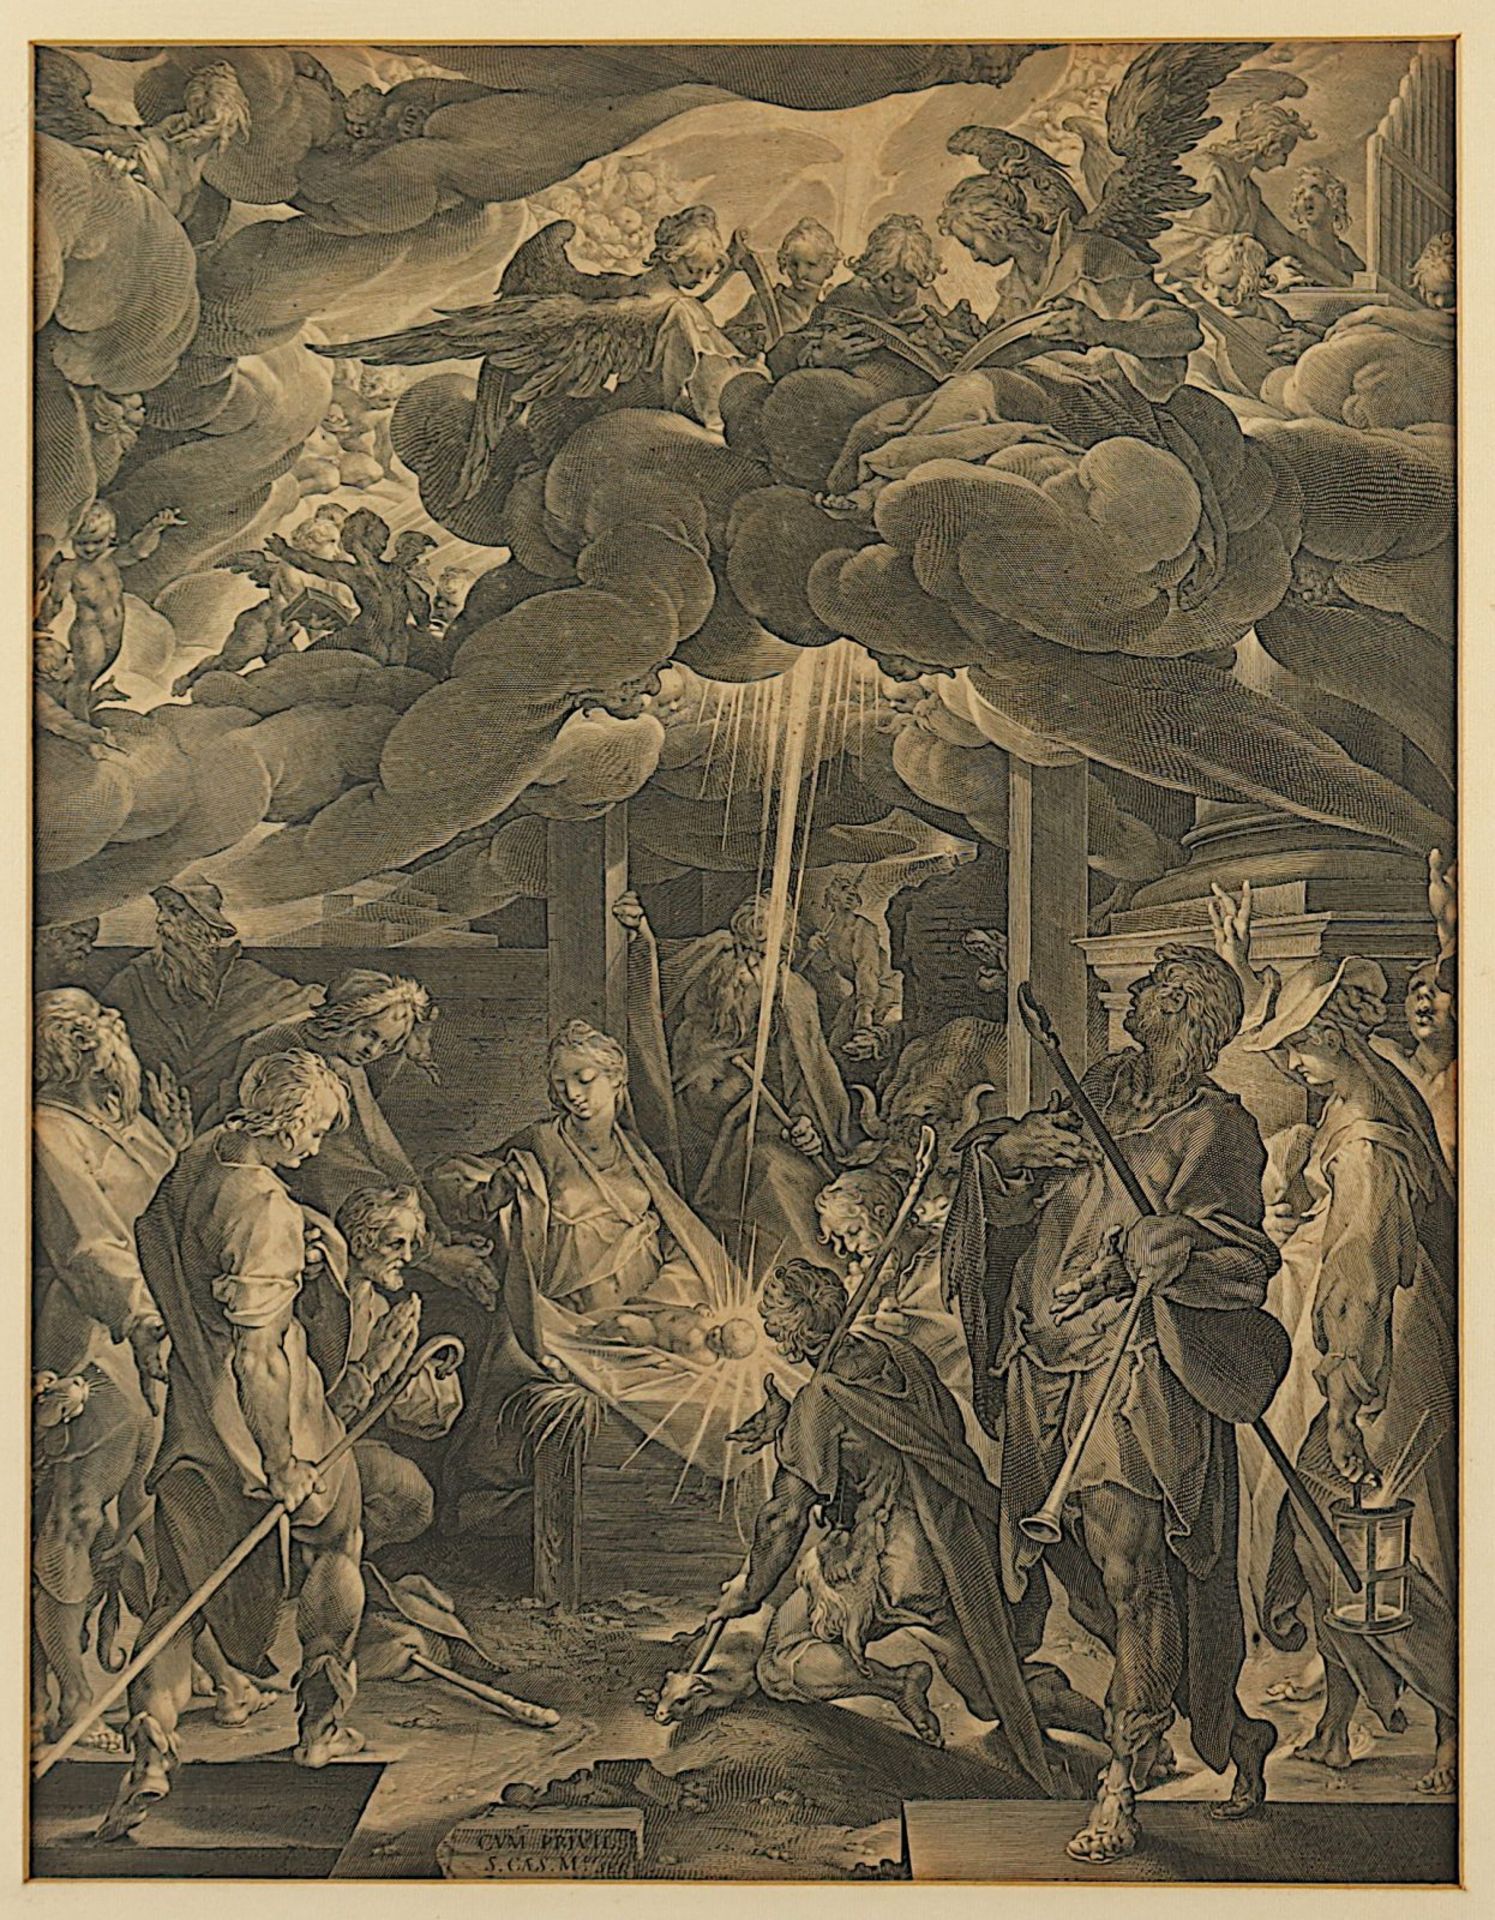 Muller, Jan Harmensz (1571-1628), "Die Anbetung der Hirten", nach Bartholomäus Spranger, Kupferstich